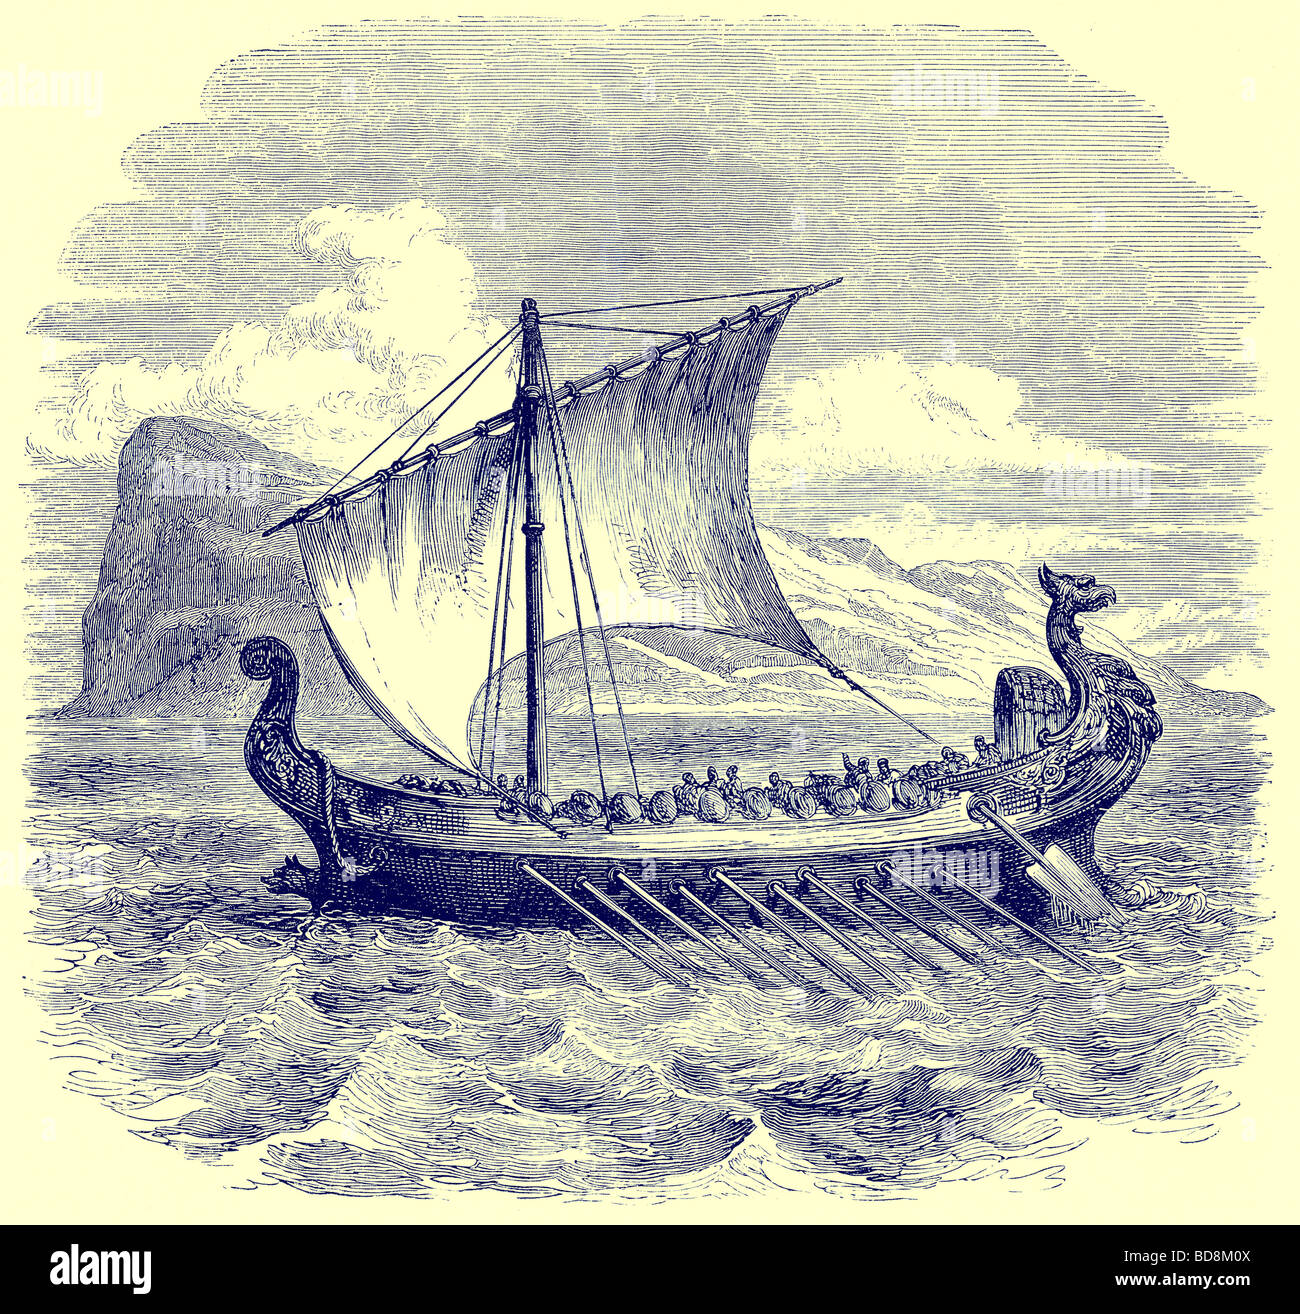 Eine phönizische Galeere Darstellung von Meer-Bilder von James Macaulay religiöses Traktat-Gesellschaft C 1880 Stockfoto